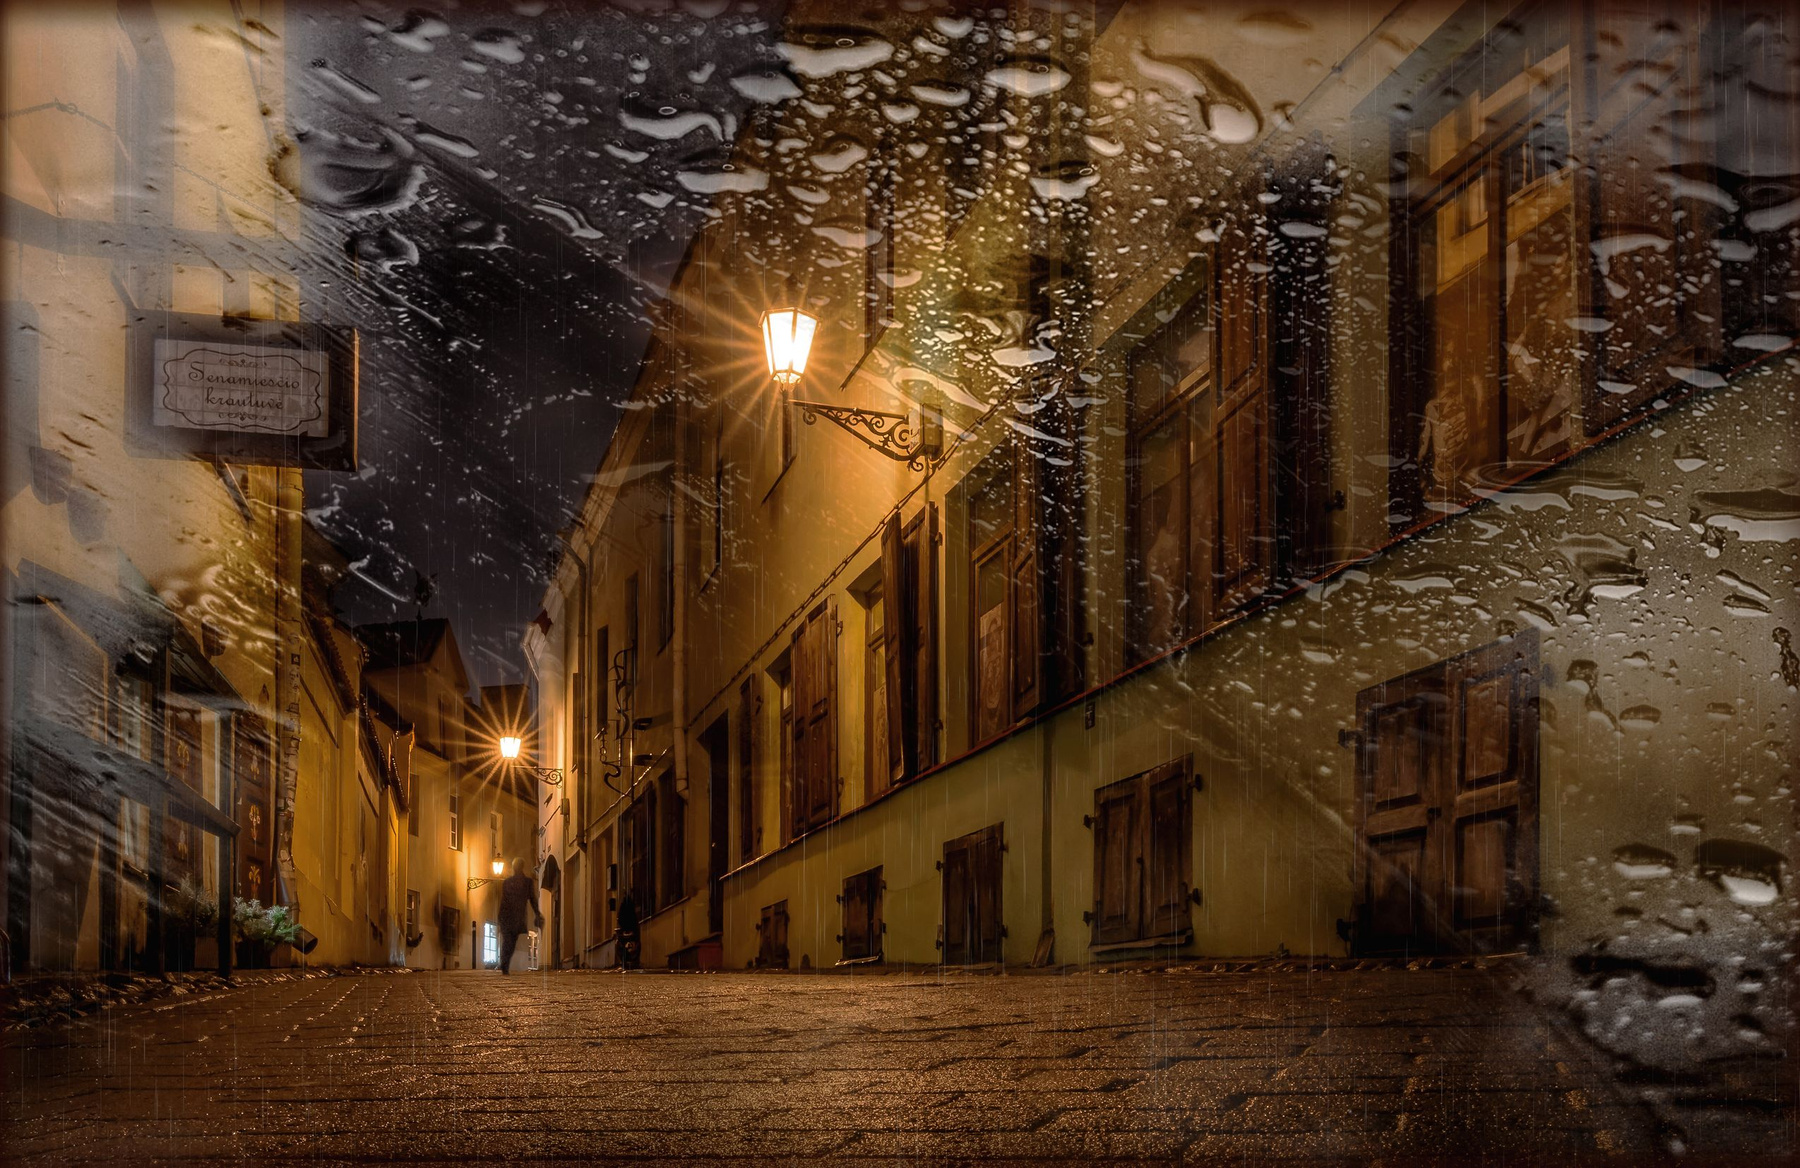 Дождь в старом городе 2 Старый город Вильнюс ночь дождь